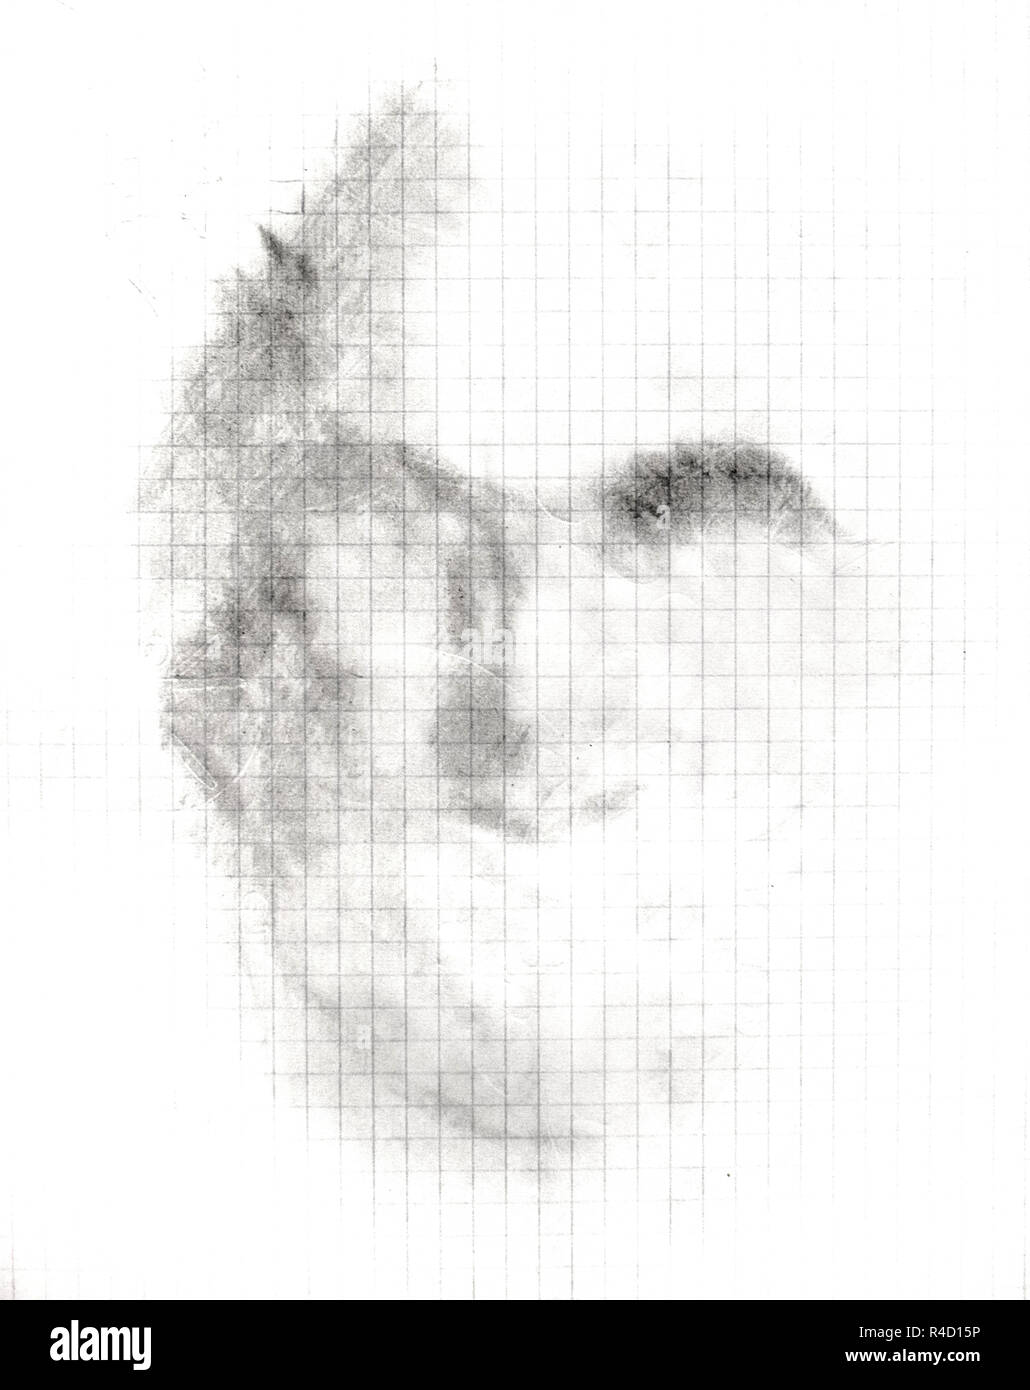 Der Schatten eines bemannt Gesicht auf einem Notebook, einem einfachen  Bleistift, eine Skizze Stockfotografie - Alamy